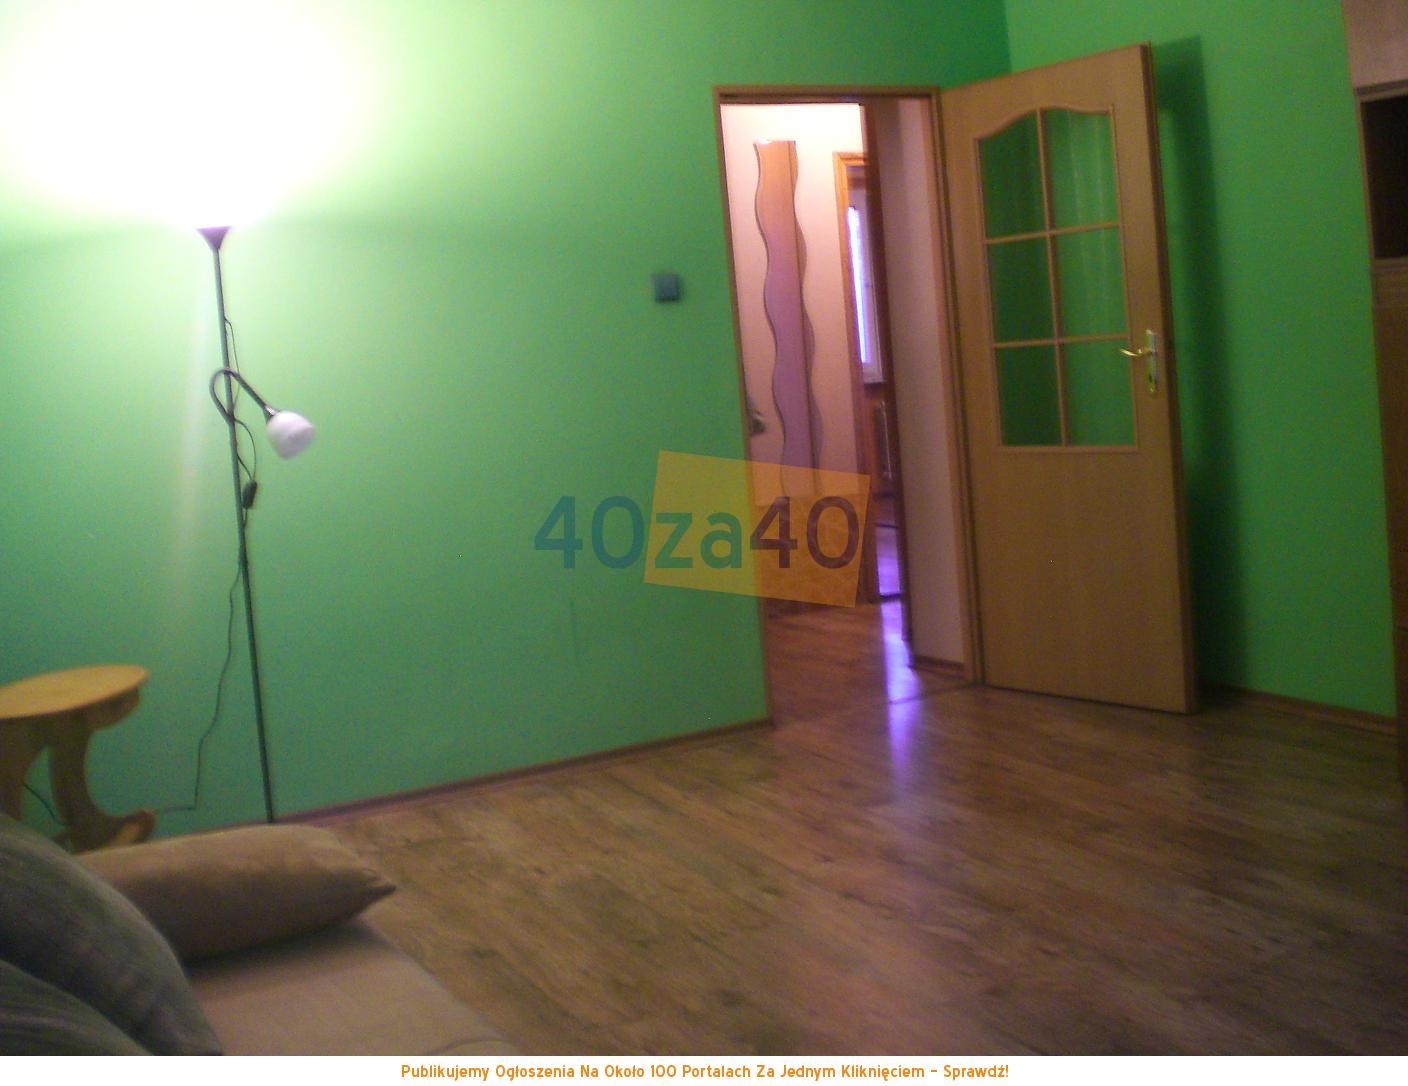 Mieszkanie do wynajęcia, pokoje: 2, cena: 1 200,00 PLN, Katowice, kontakt: 660 870 660